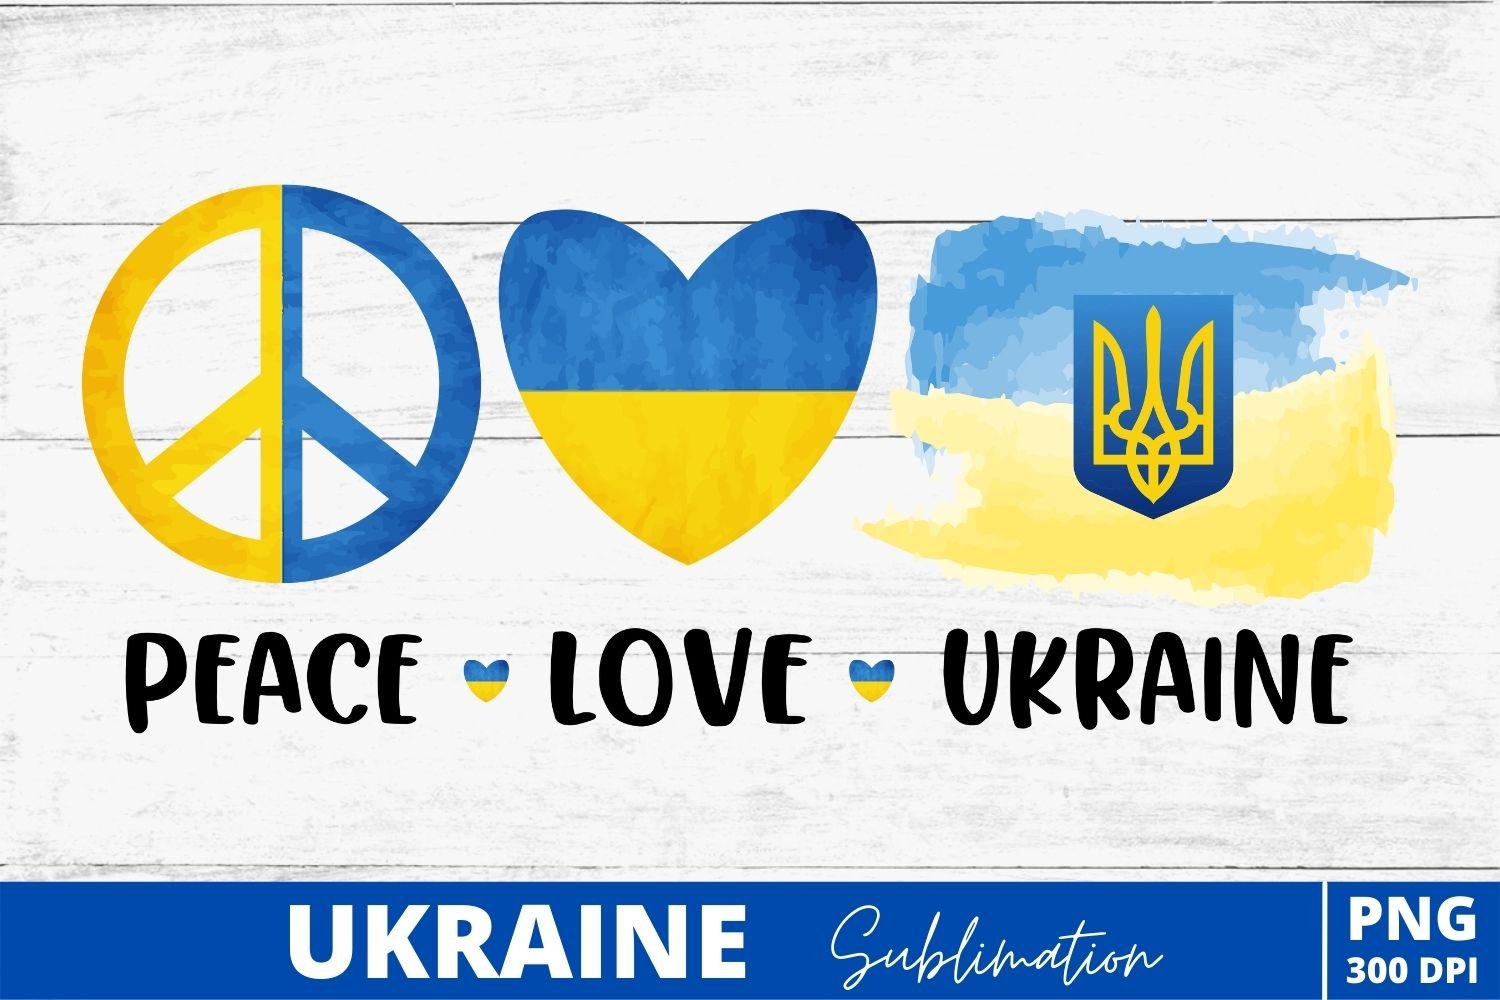 Ukraine Sublimation preview image.